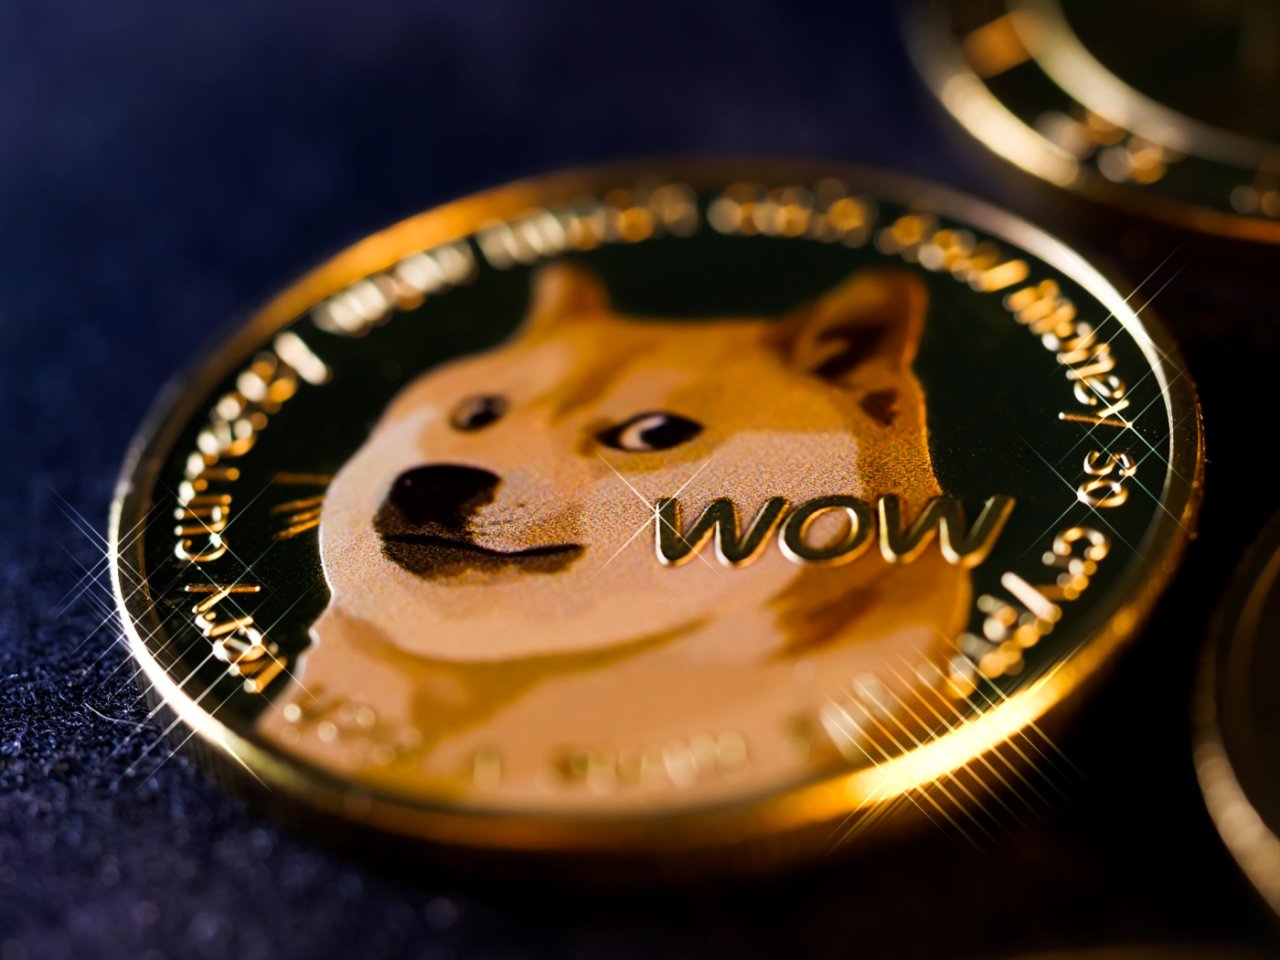 Twitter change de logo pour celui du Dogecoin et le cours de la cryptomonnaie s'envole